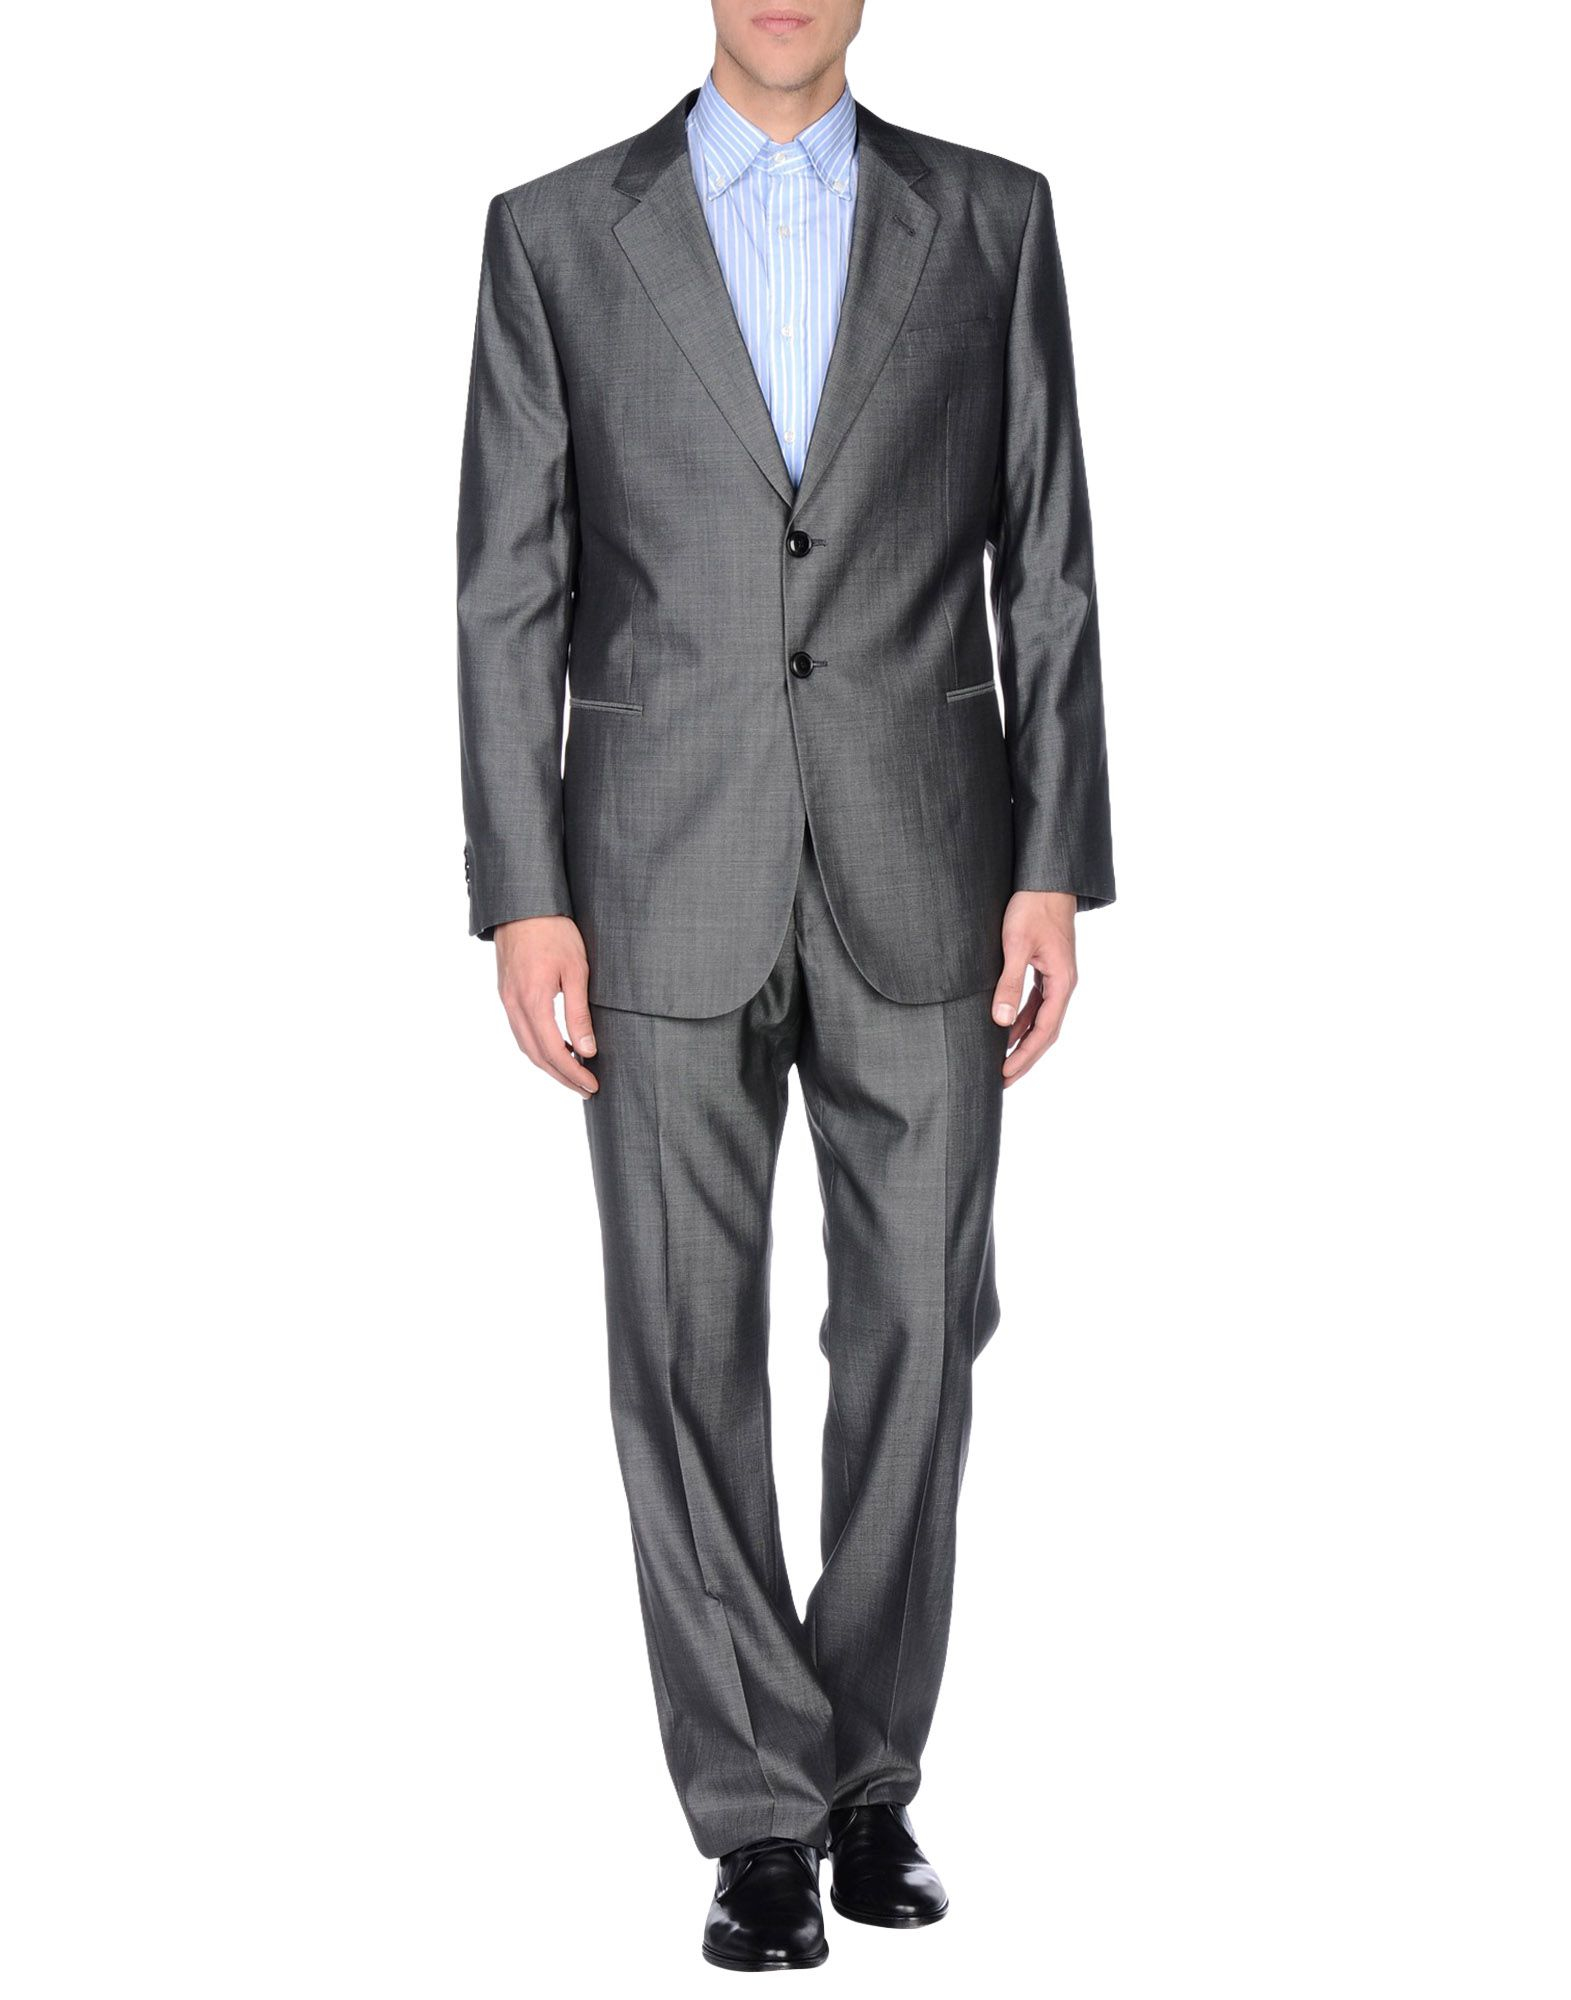 Lyst - Giorgio Armani Suit in Gray for Men